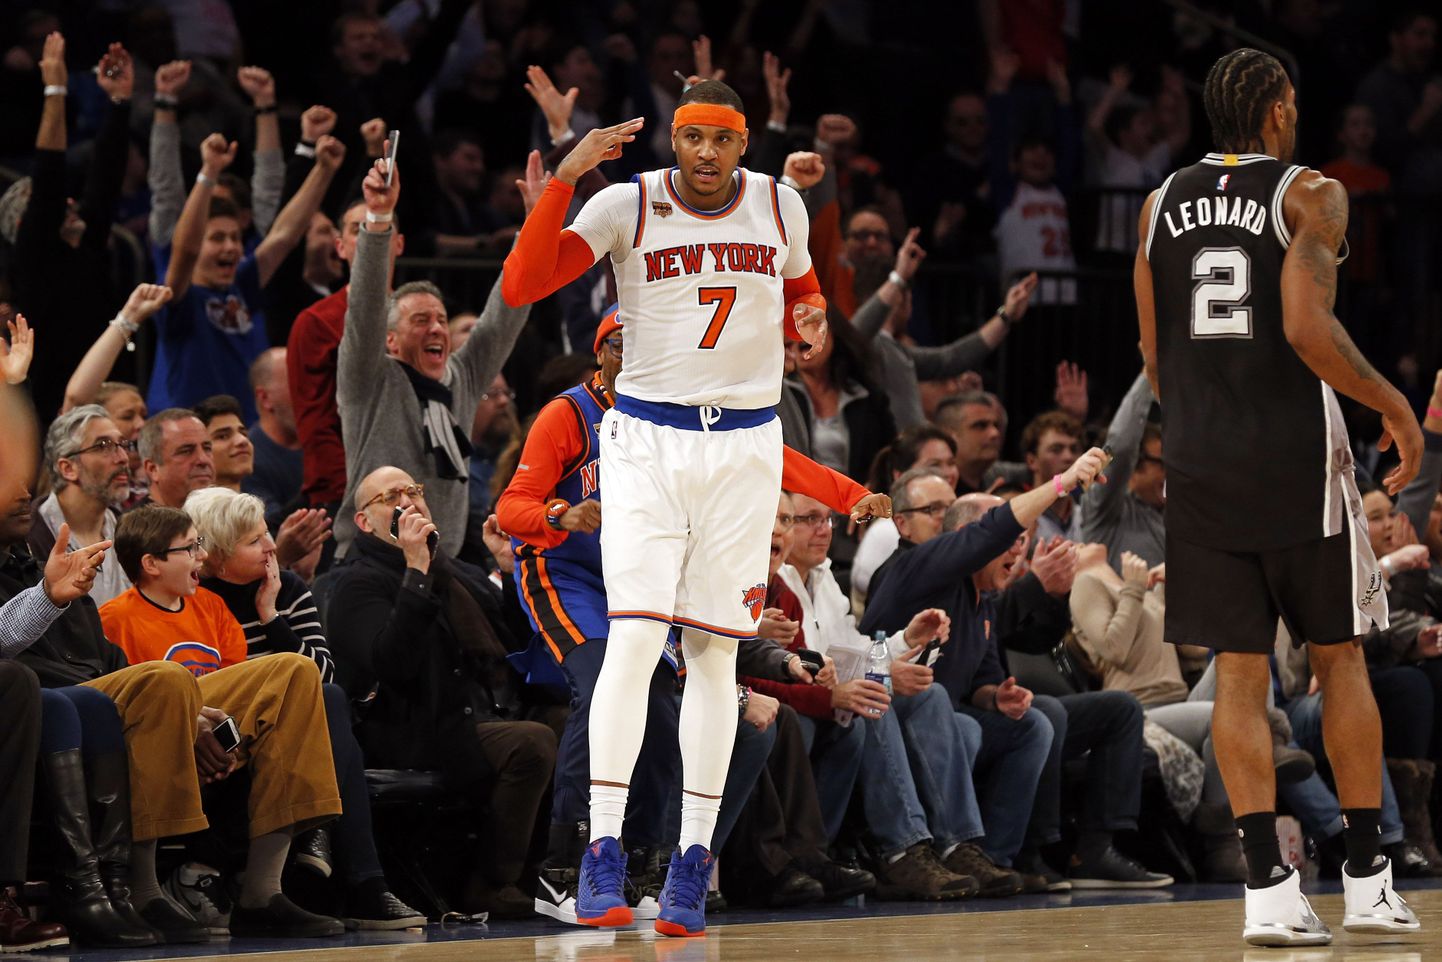 Kawhi Leonard (paremal) viskas küll 36 punkti, kuid Carmelo Anthony (vasakul) ja New York Knicks suutsid nelja punktiga San Antonio Spursist jagu saada.